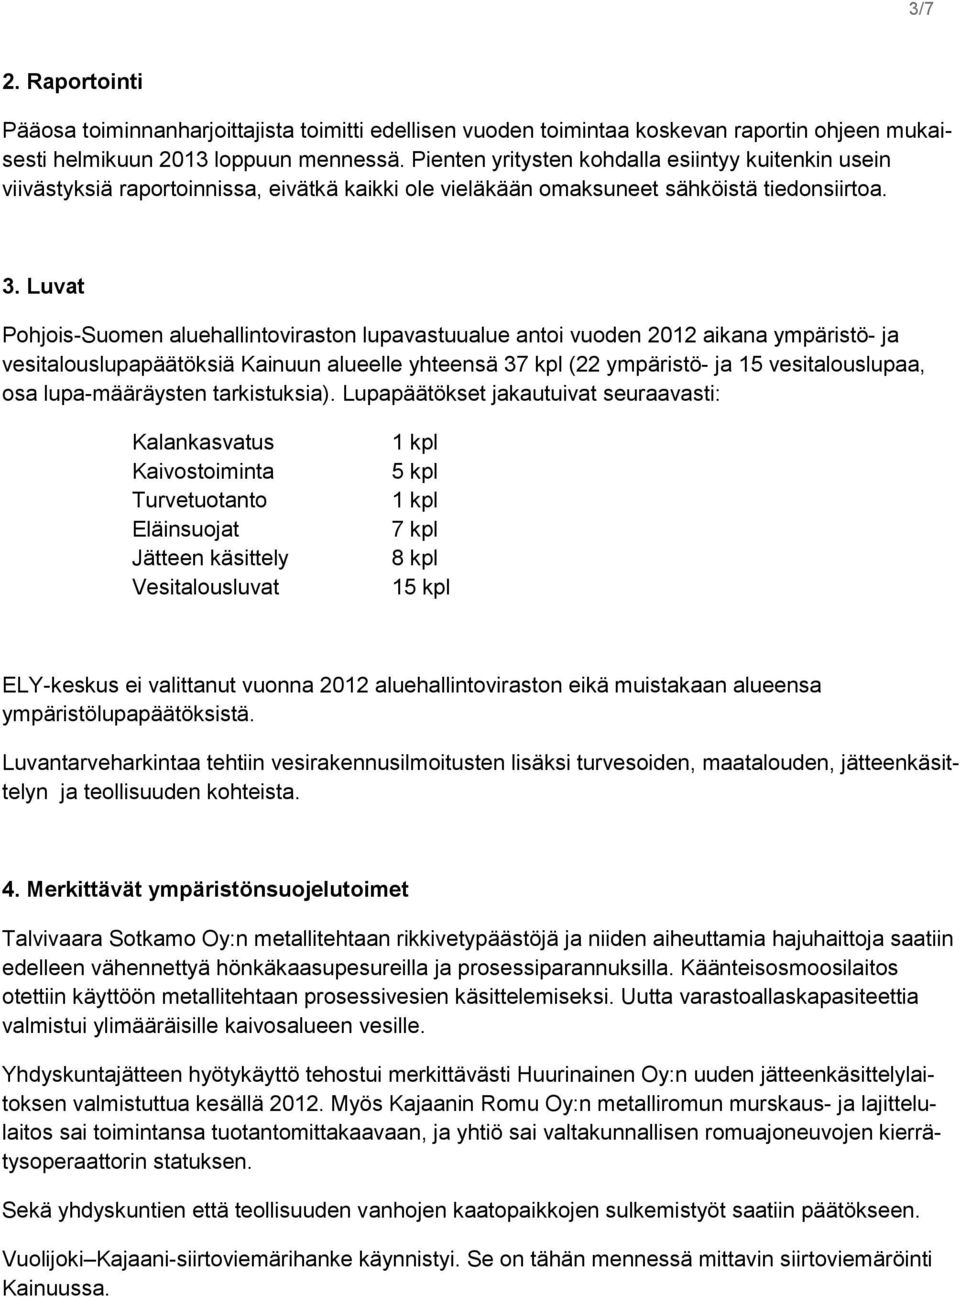 Luvat Pohjois-Suomen aluehallintoviraston lupavastuualue antoi vuoden 2012 aikana ympäristö- ja vesitalouslupapäätöksiä Kainuun alueelle yhteensä 37 kpl (22 ympäristö- ja 15 vesitalouslupaa, osa